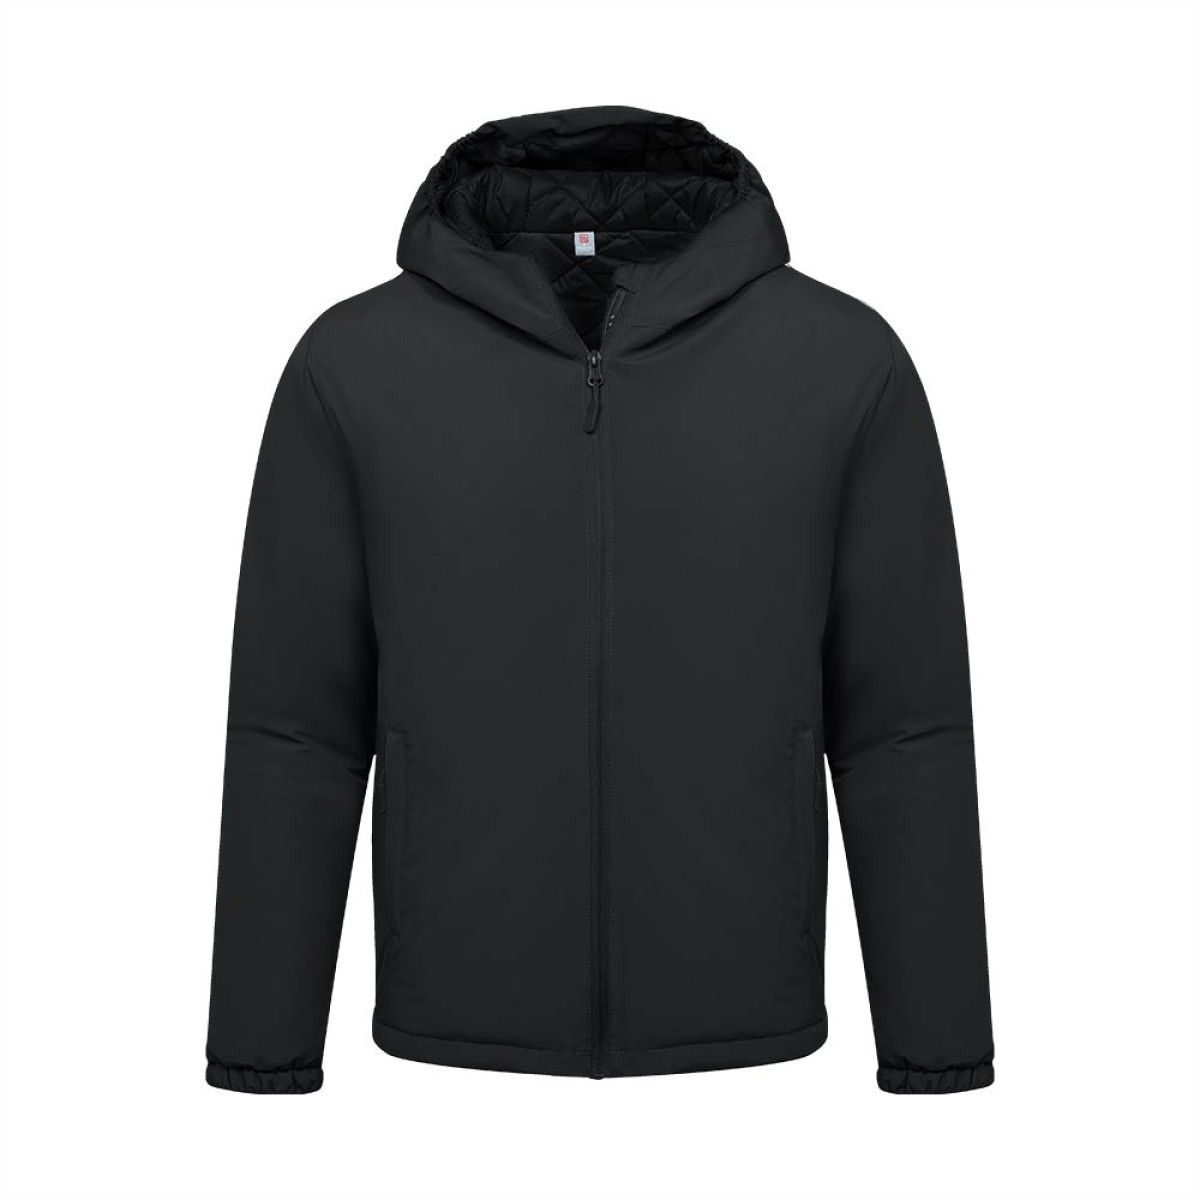 unisex-gore-tex-jacket-kugj35347-8a-winter-wear